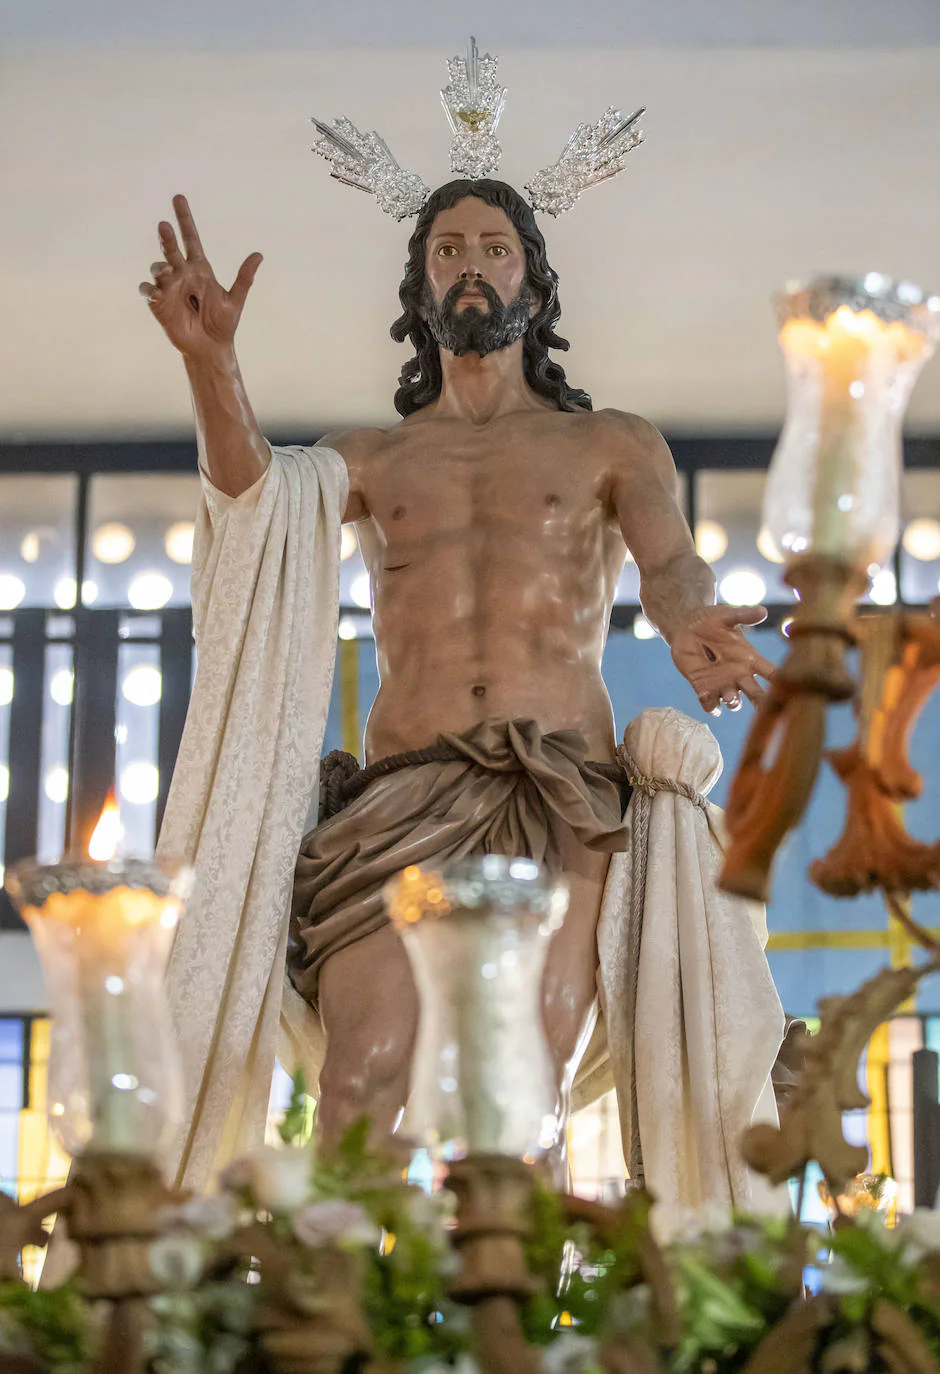 El Domingo de Resurreción de Huelva, en imágenes